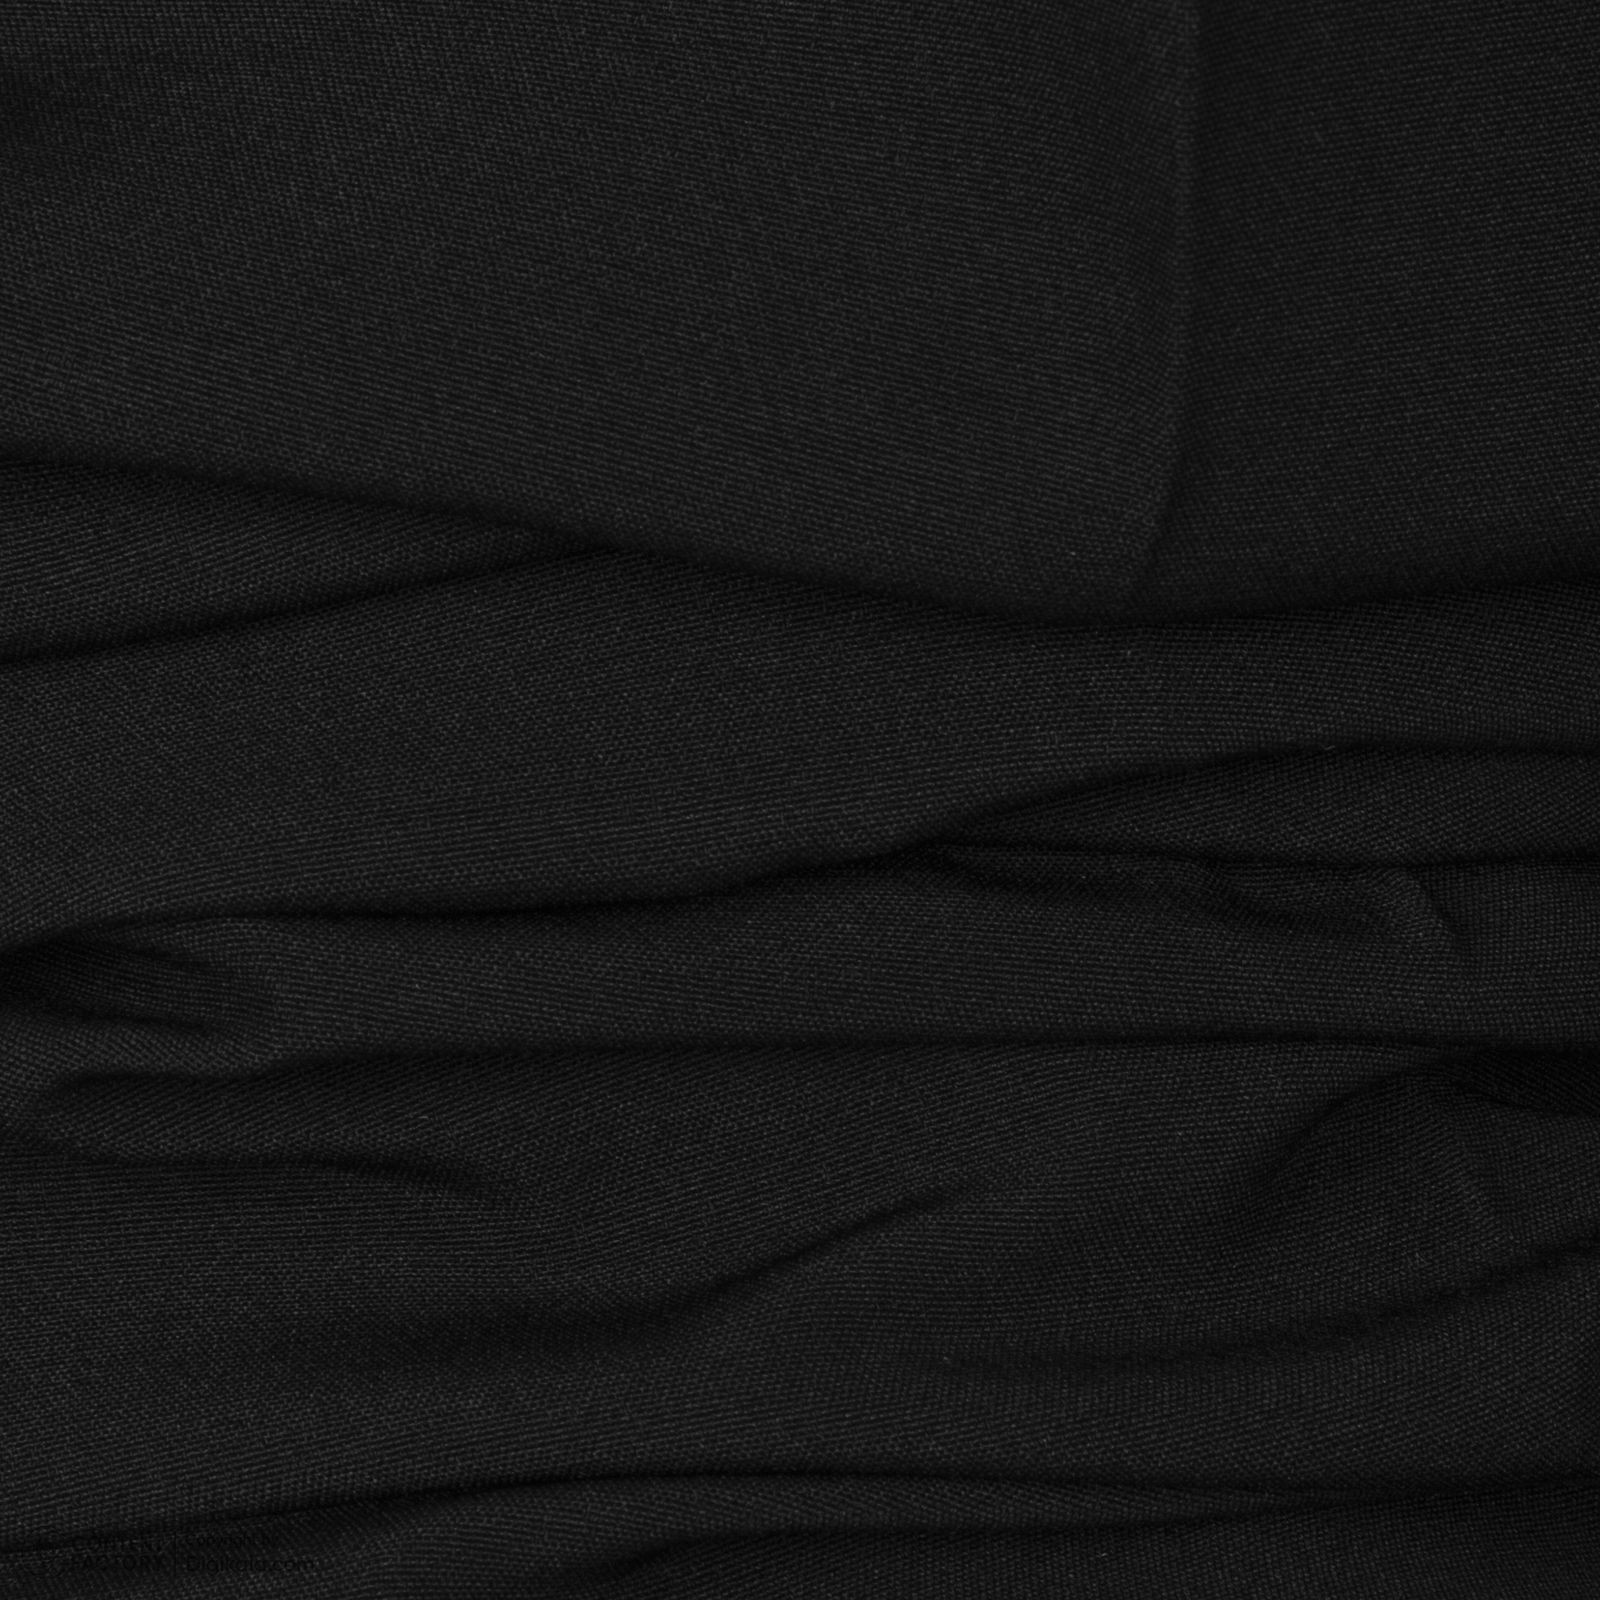 ست کت و شلوار زنانه نیزل مدل 0057-002 رنگ مشکی -  - 10